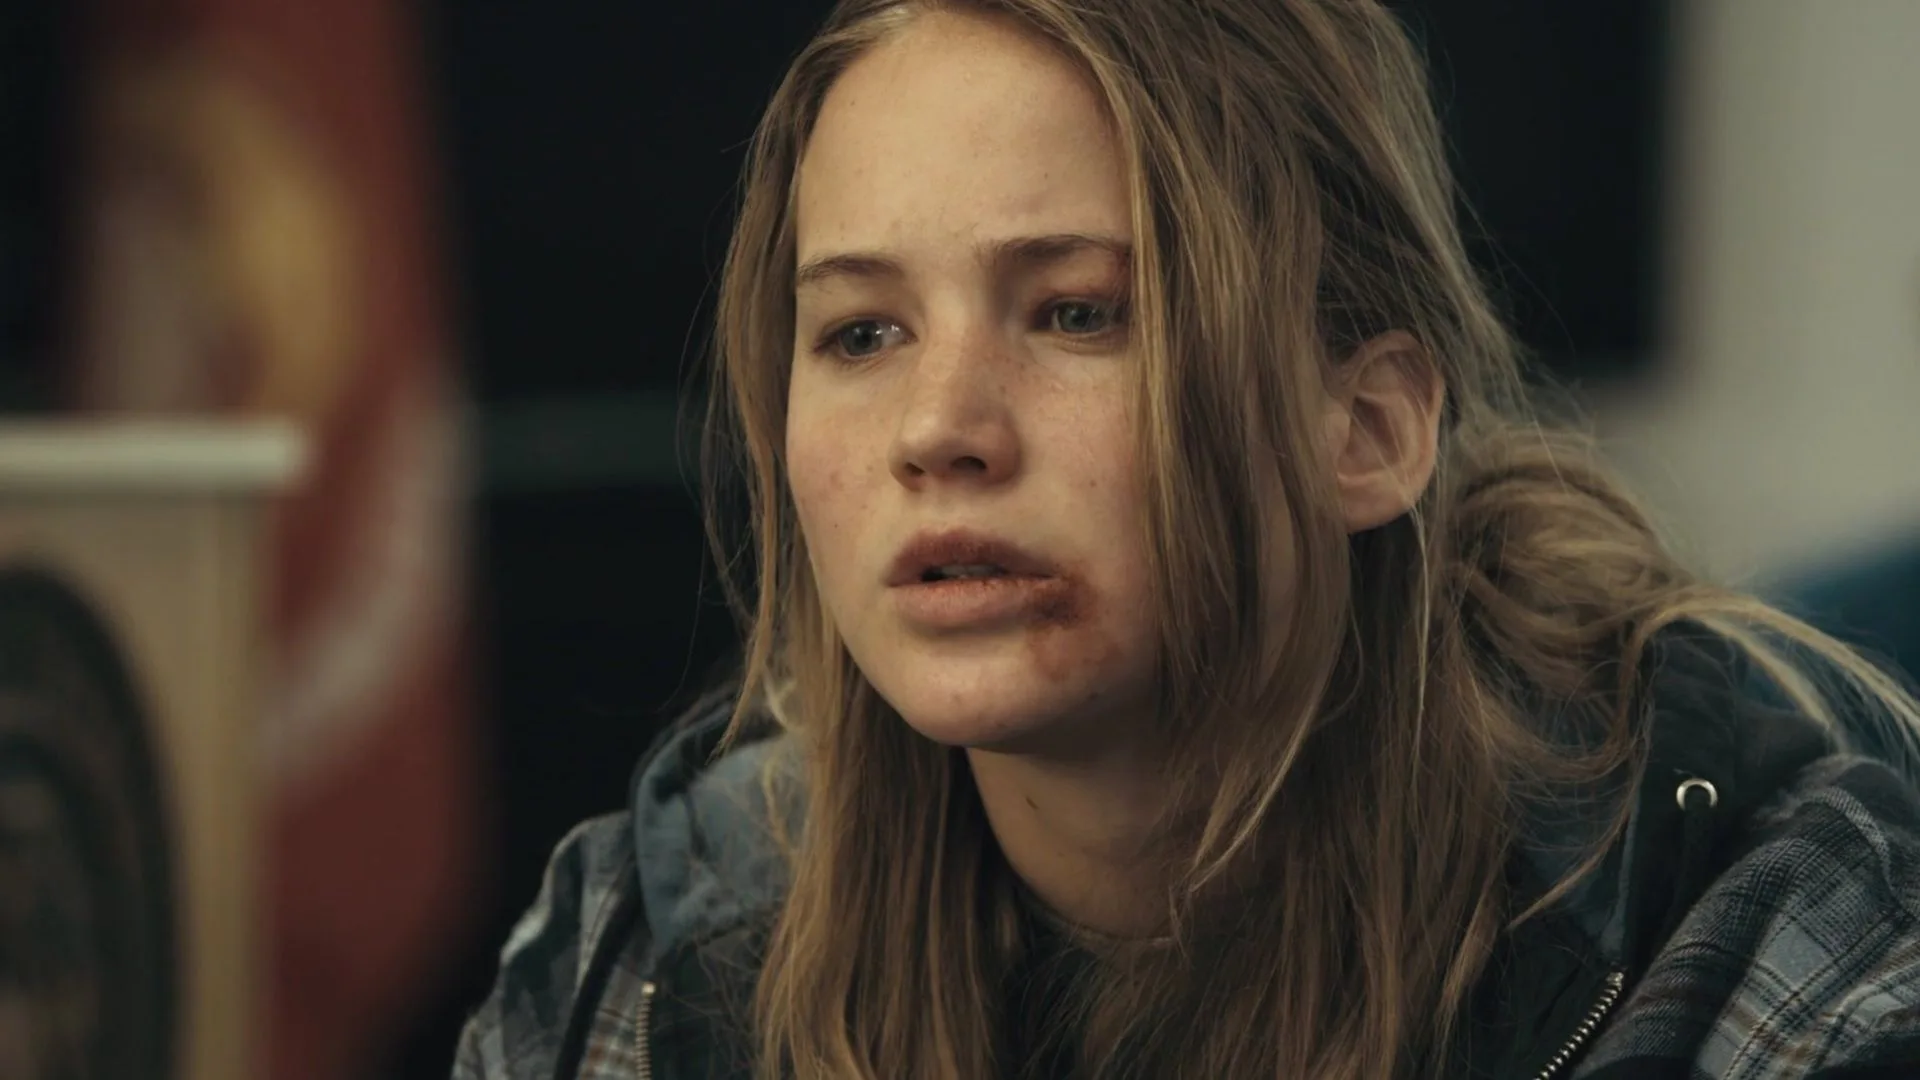 Lawrence interpretó a una joven valiente en Lazos de sangre (2010), por la que tuvo que aprender algo "repugnante".